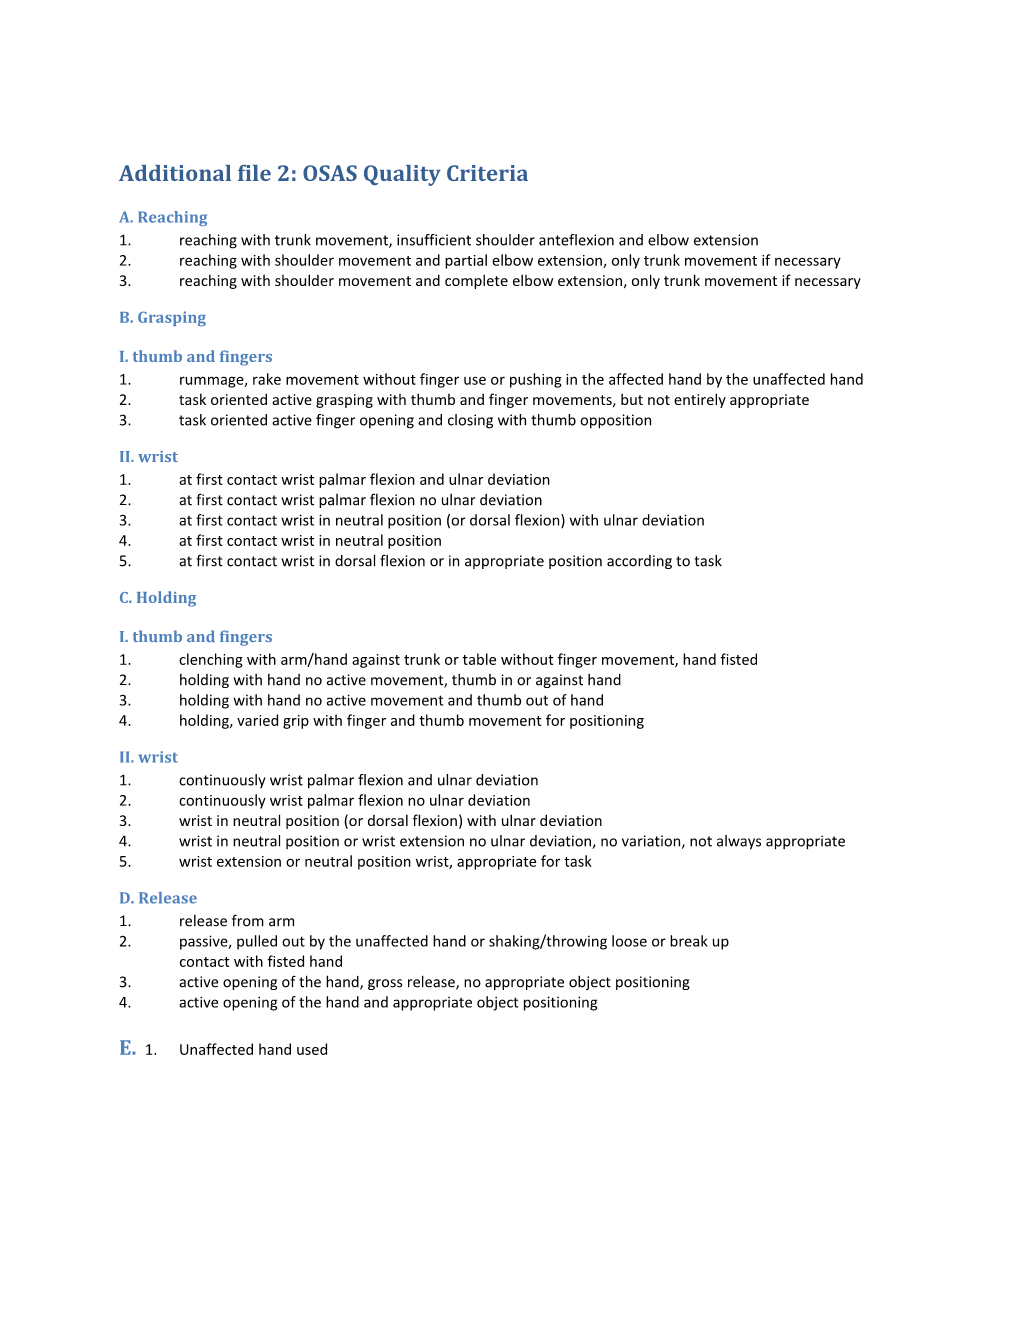 Additional File 2: OSAS Quality Criteria